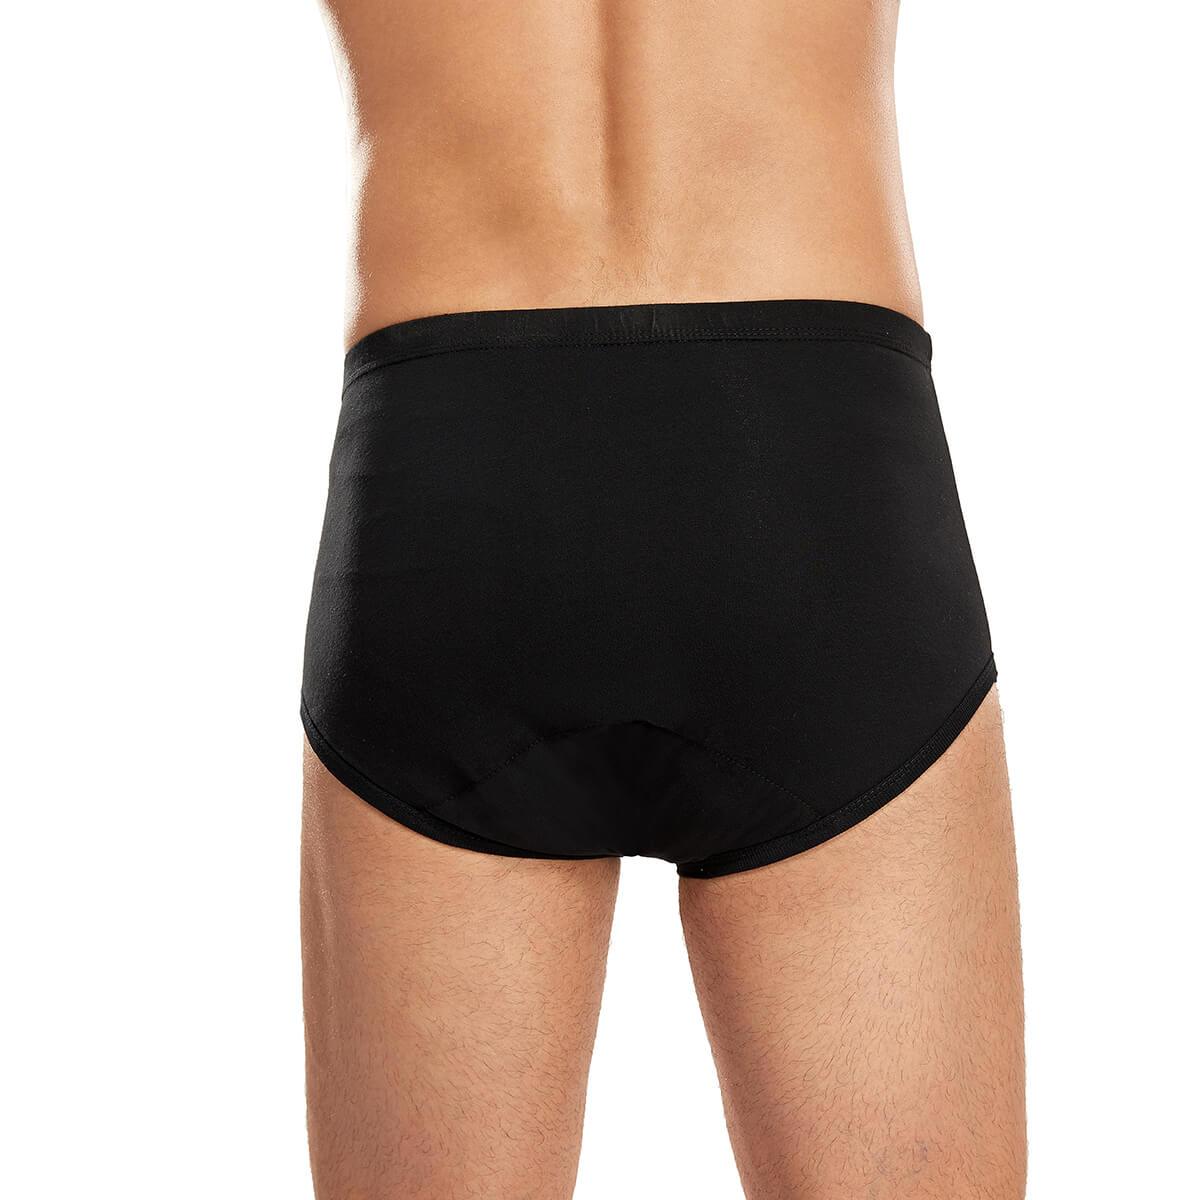 Men's Leak Proof Underwear - M66